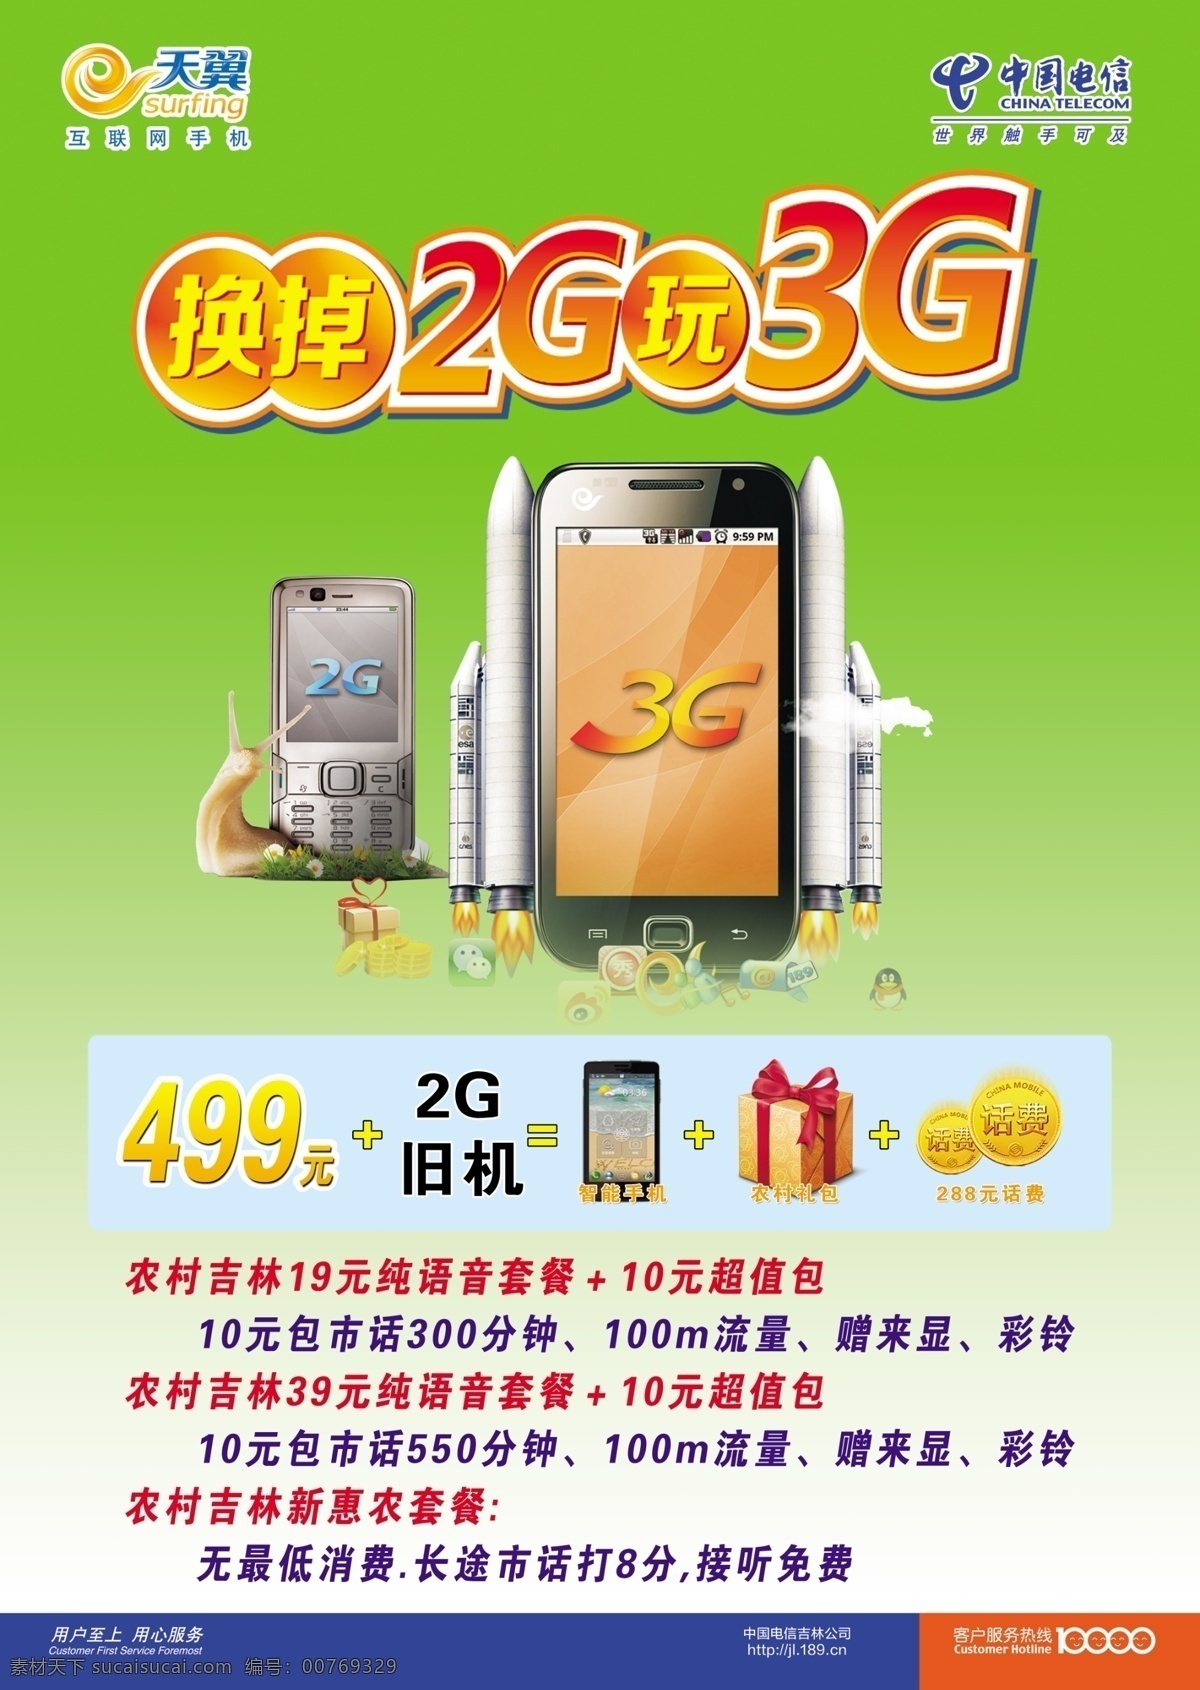 dm单 dm宣传单 广告设计模板 礼包 手机 宣传单 天翼 模板下载 换 掉 2g 玩 3g 海报 中国电信 源文件 其他海报设计